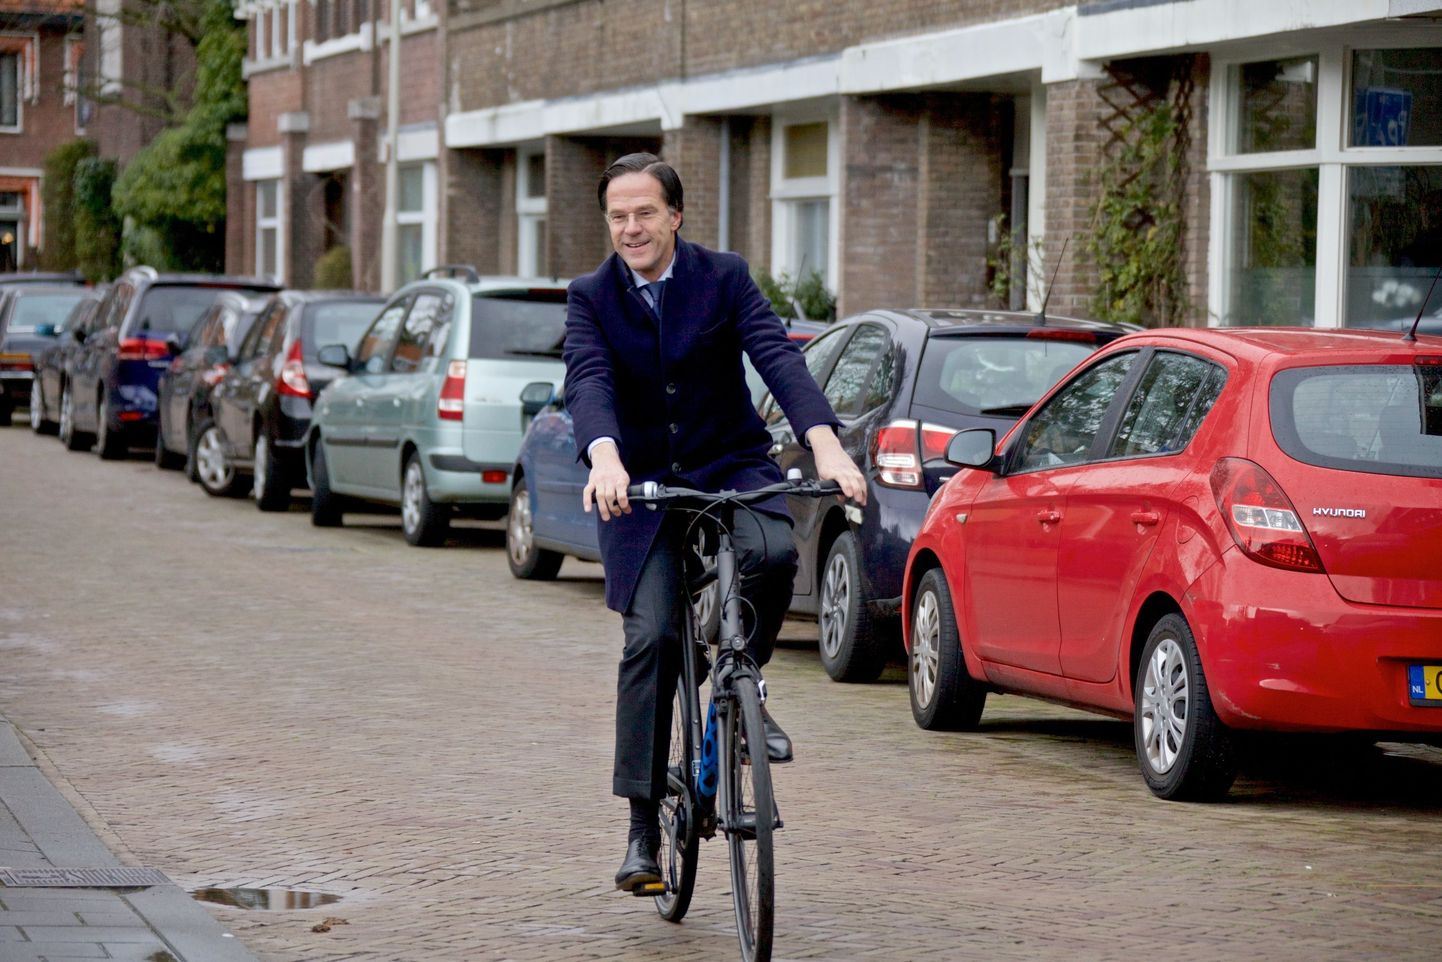 Hollandi peaminister Mark Rutte valimisjaoskonda saabumas.